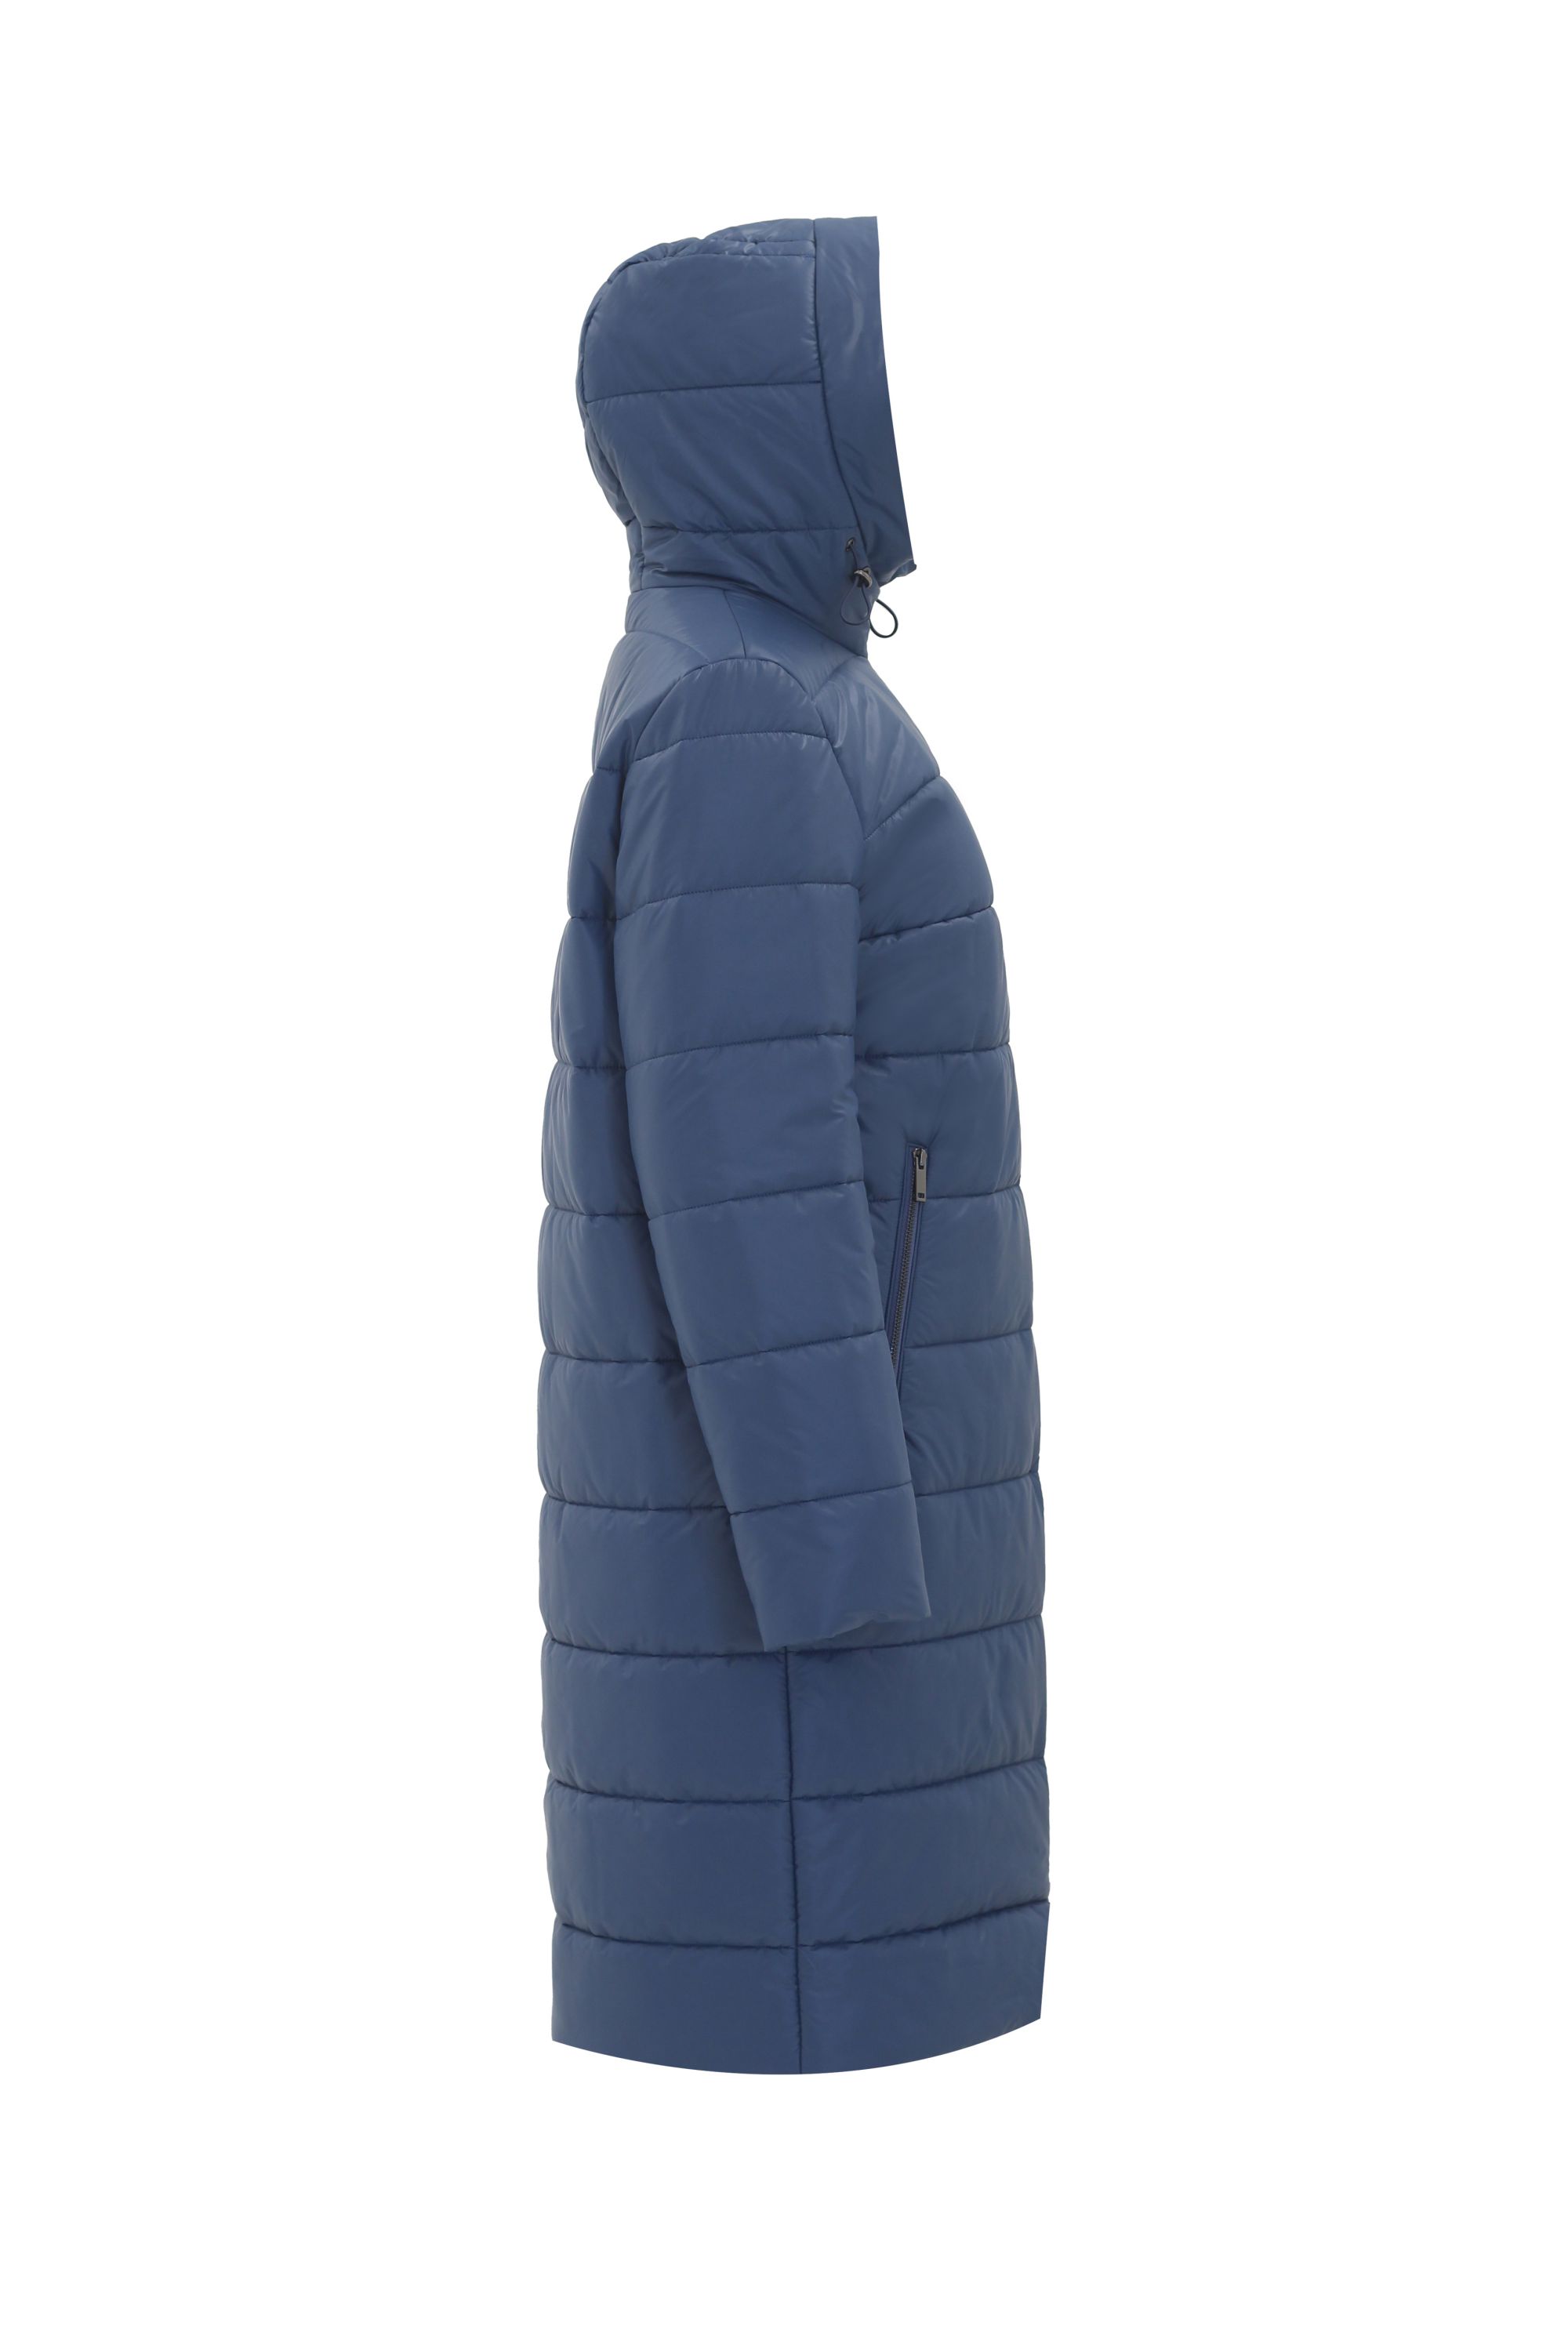 Пальто женское плащевое утепленное 5-12338-1